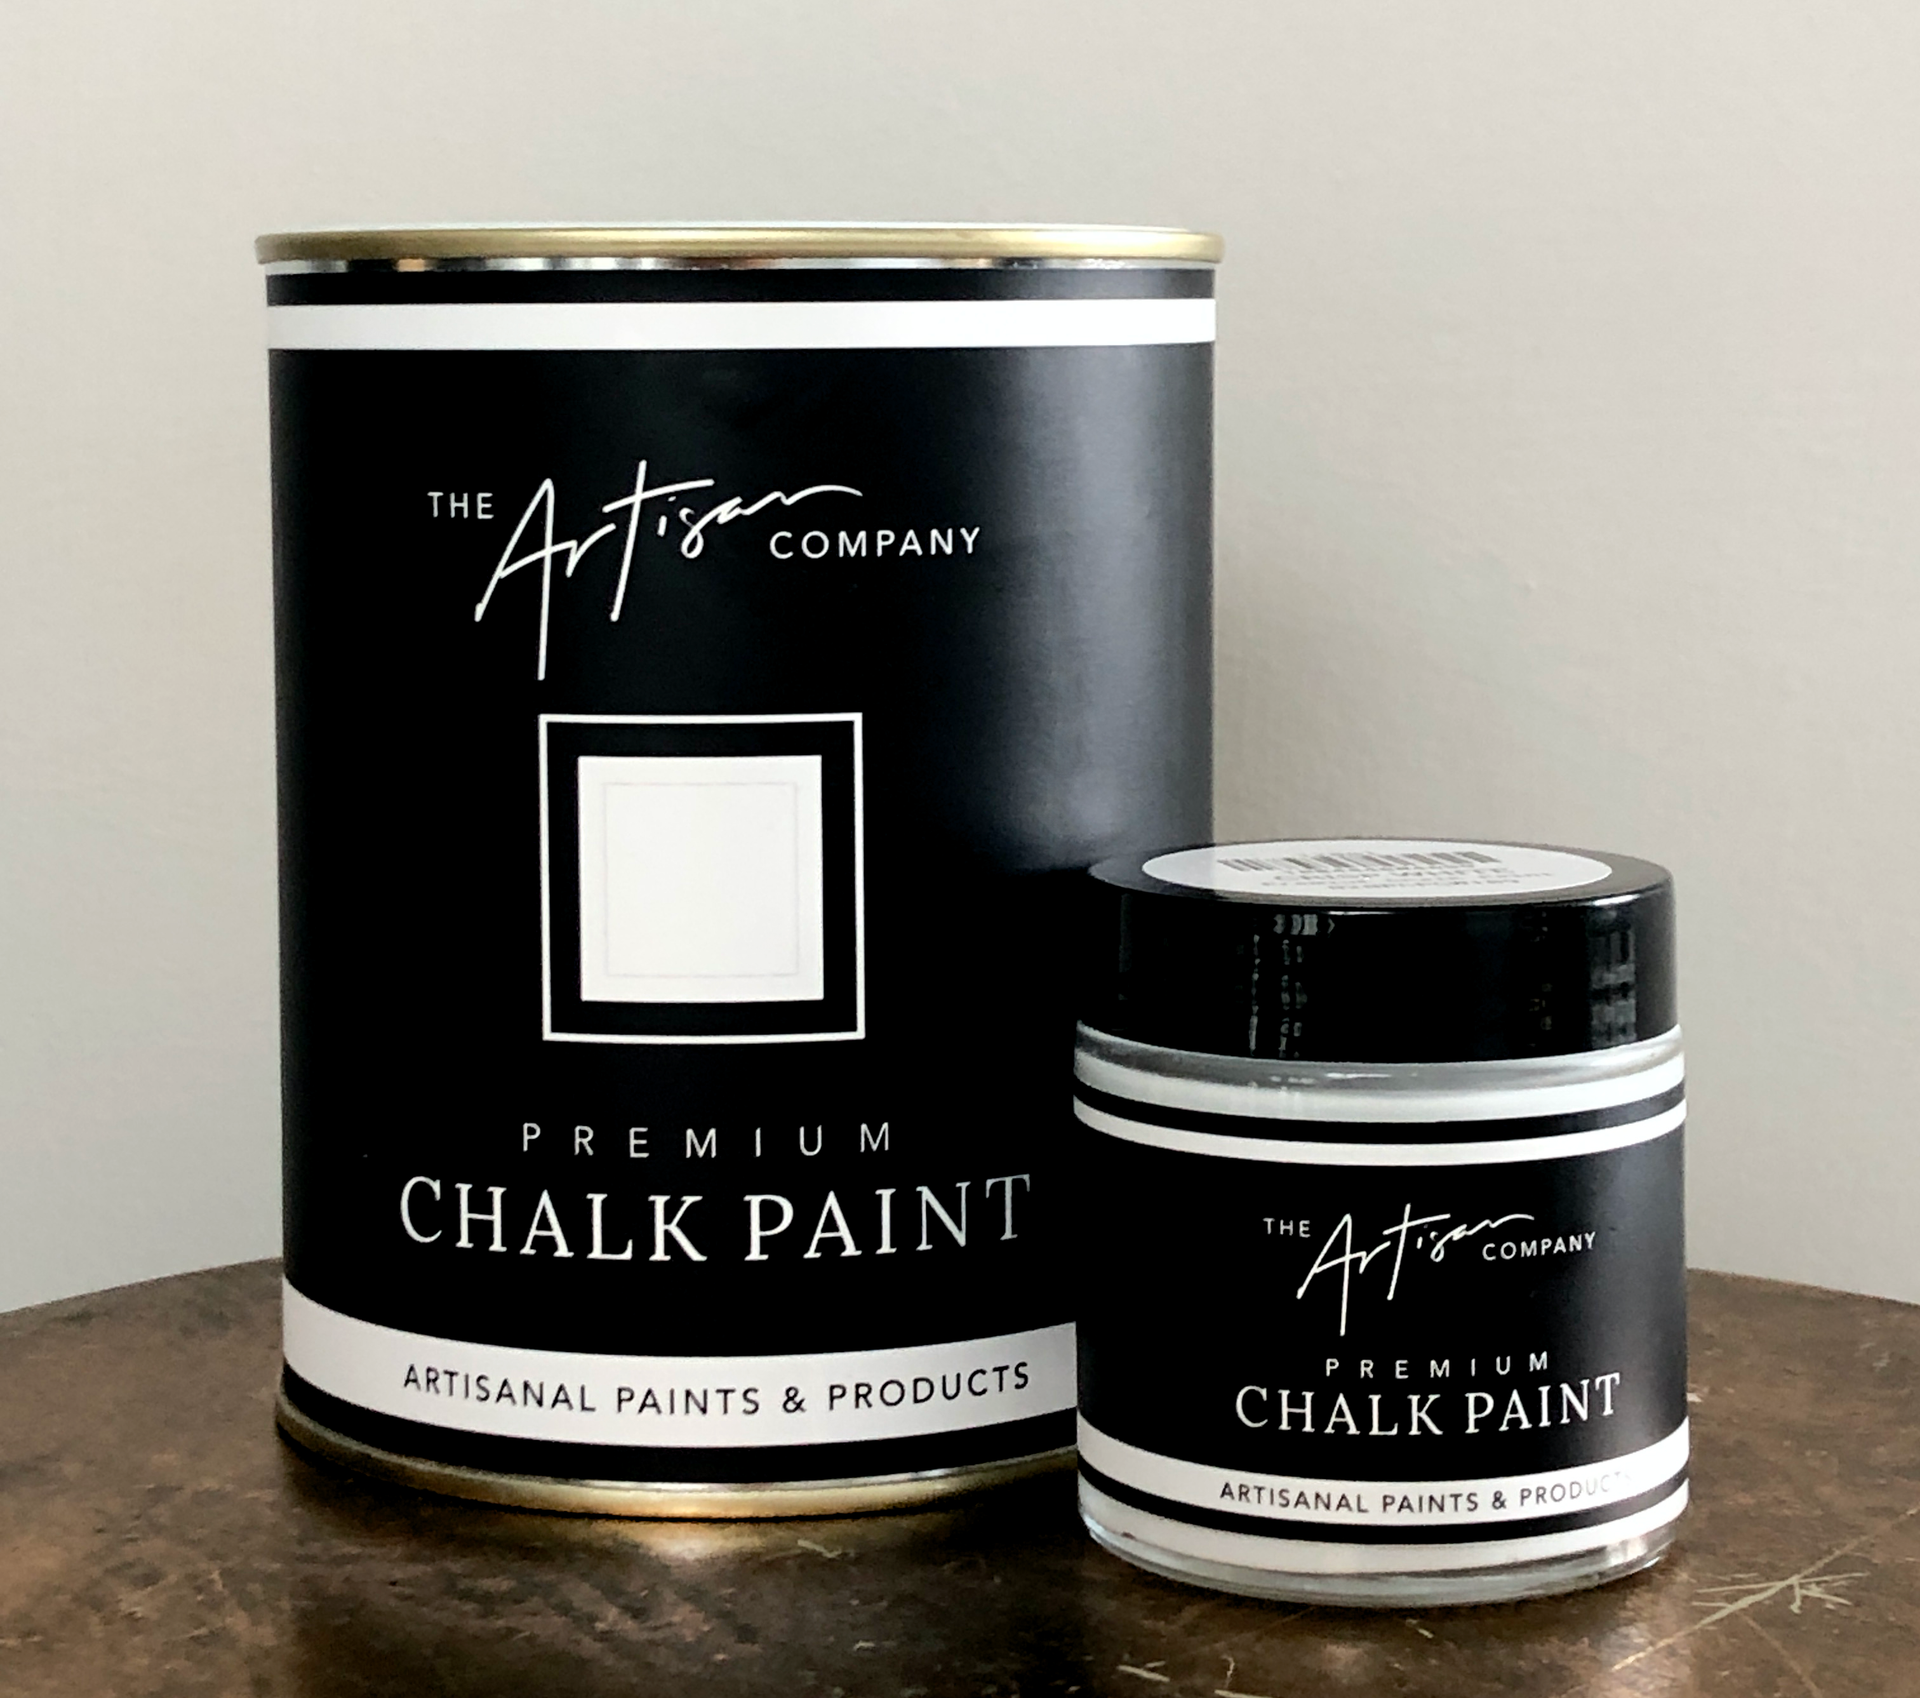 Bach Blue - Premium Chalk Paint